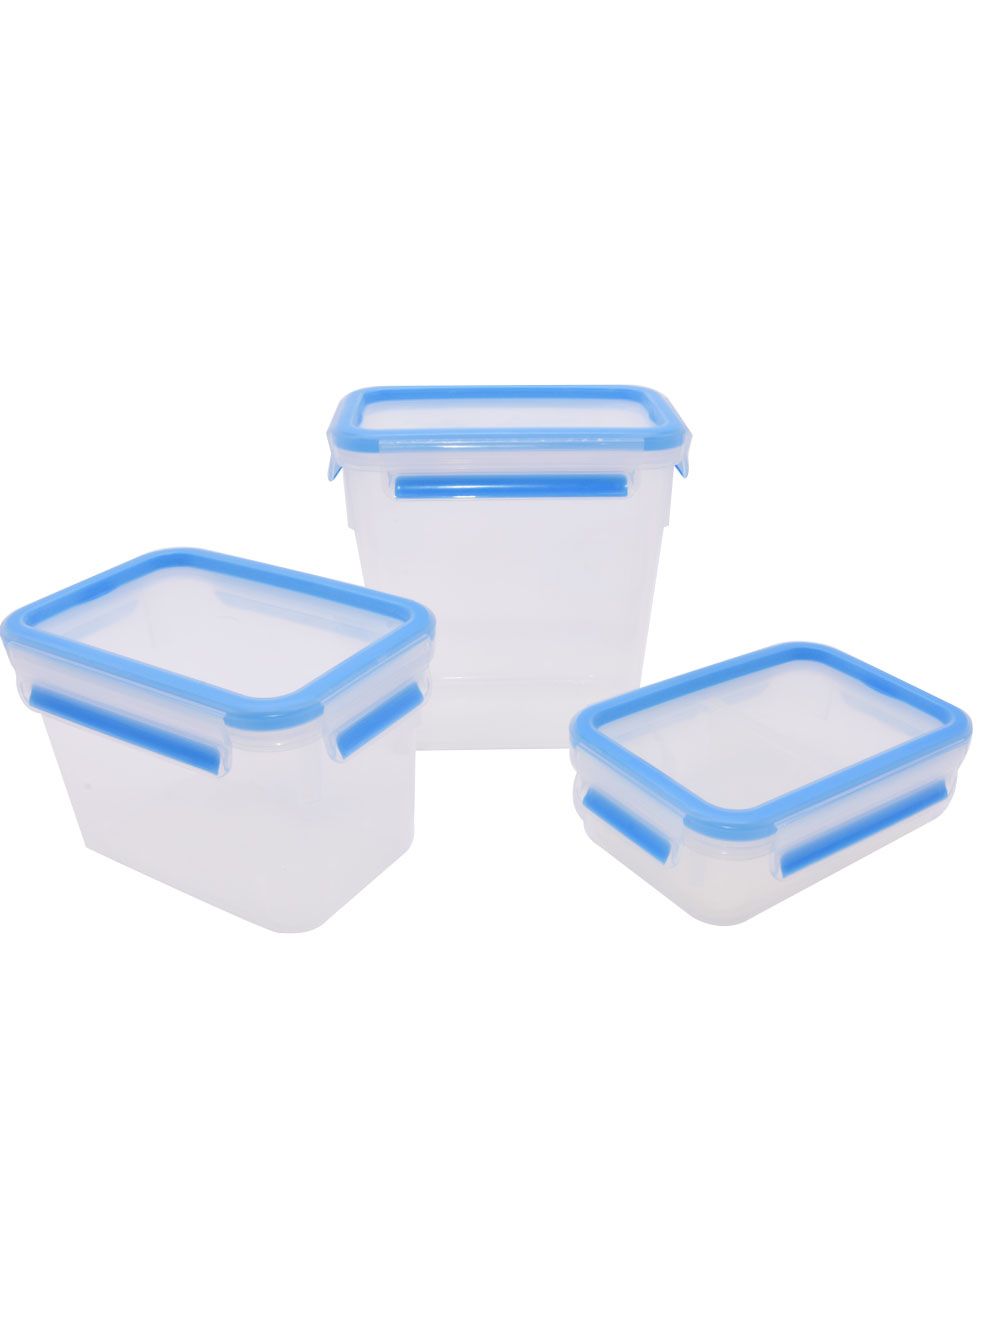 Storage Container Set Clip & Close - Blue/Transparent 4pc 0.55L, 1.1L ,1.6L